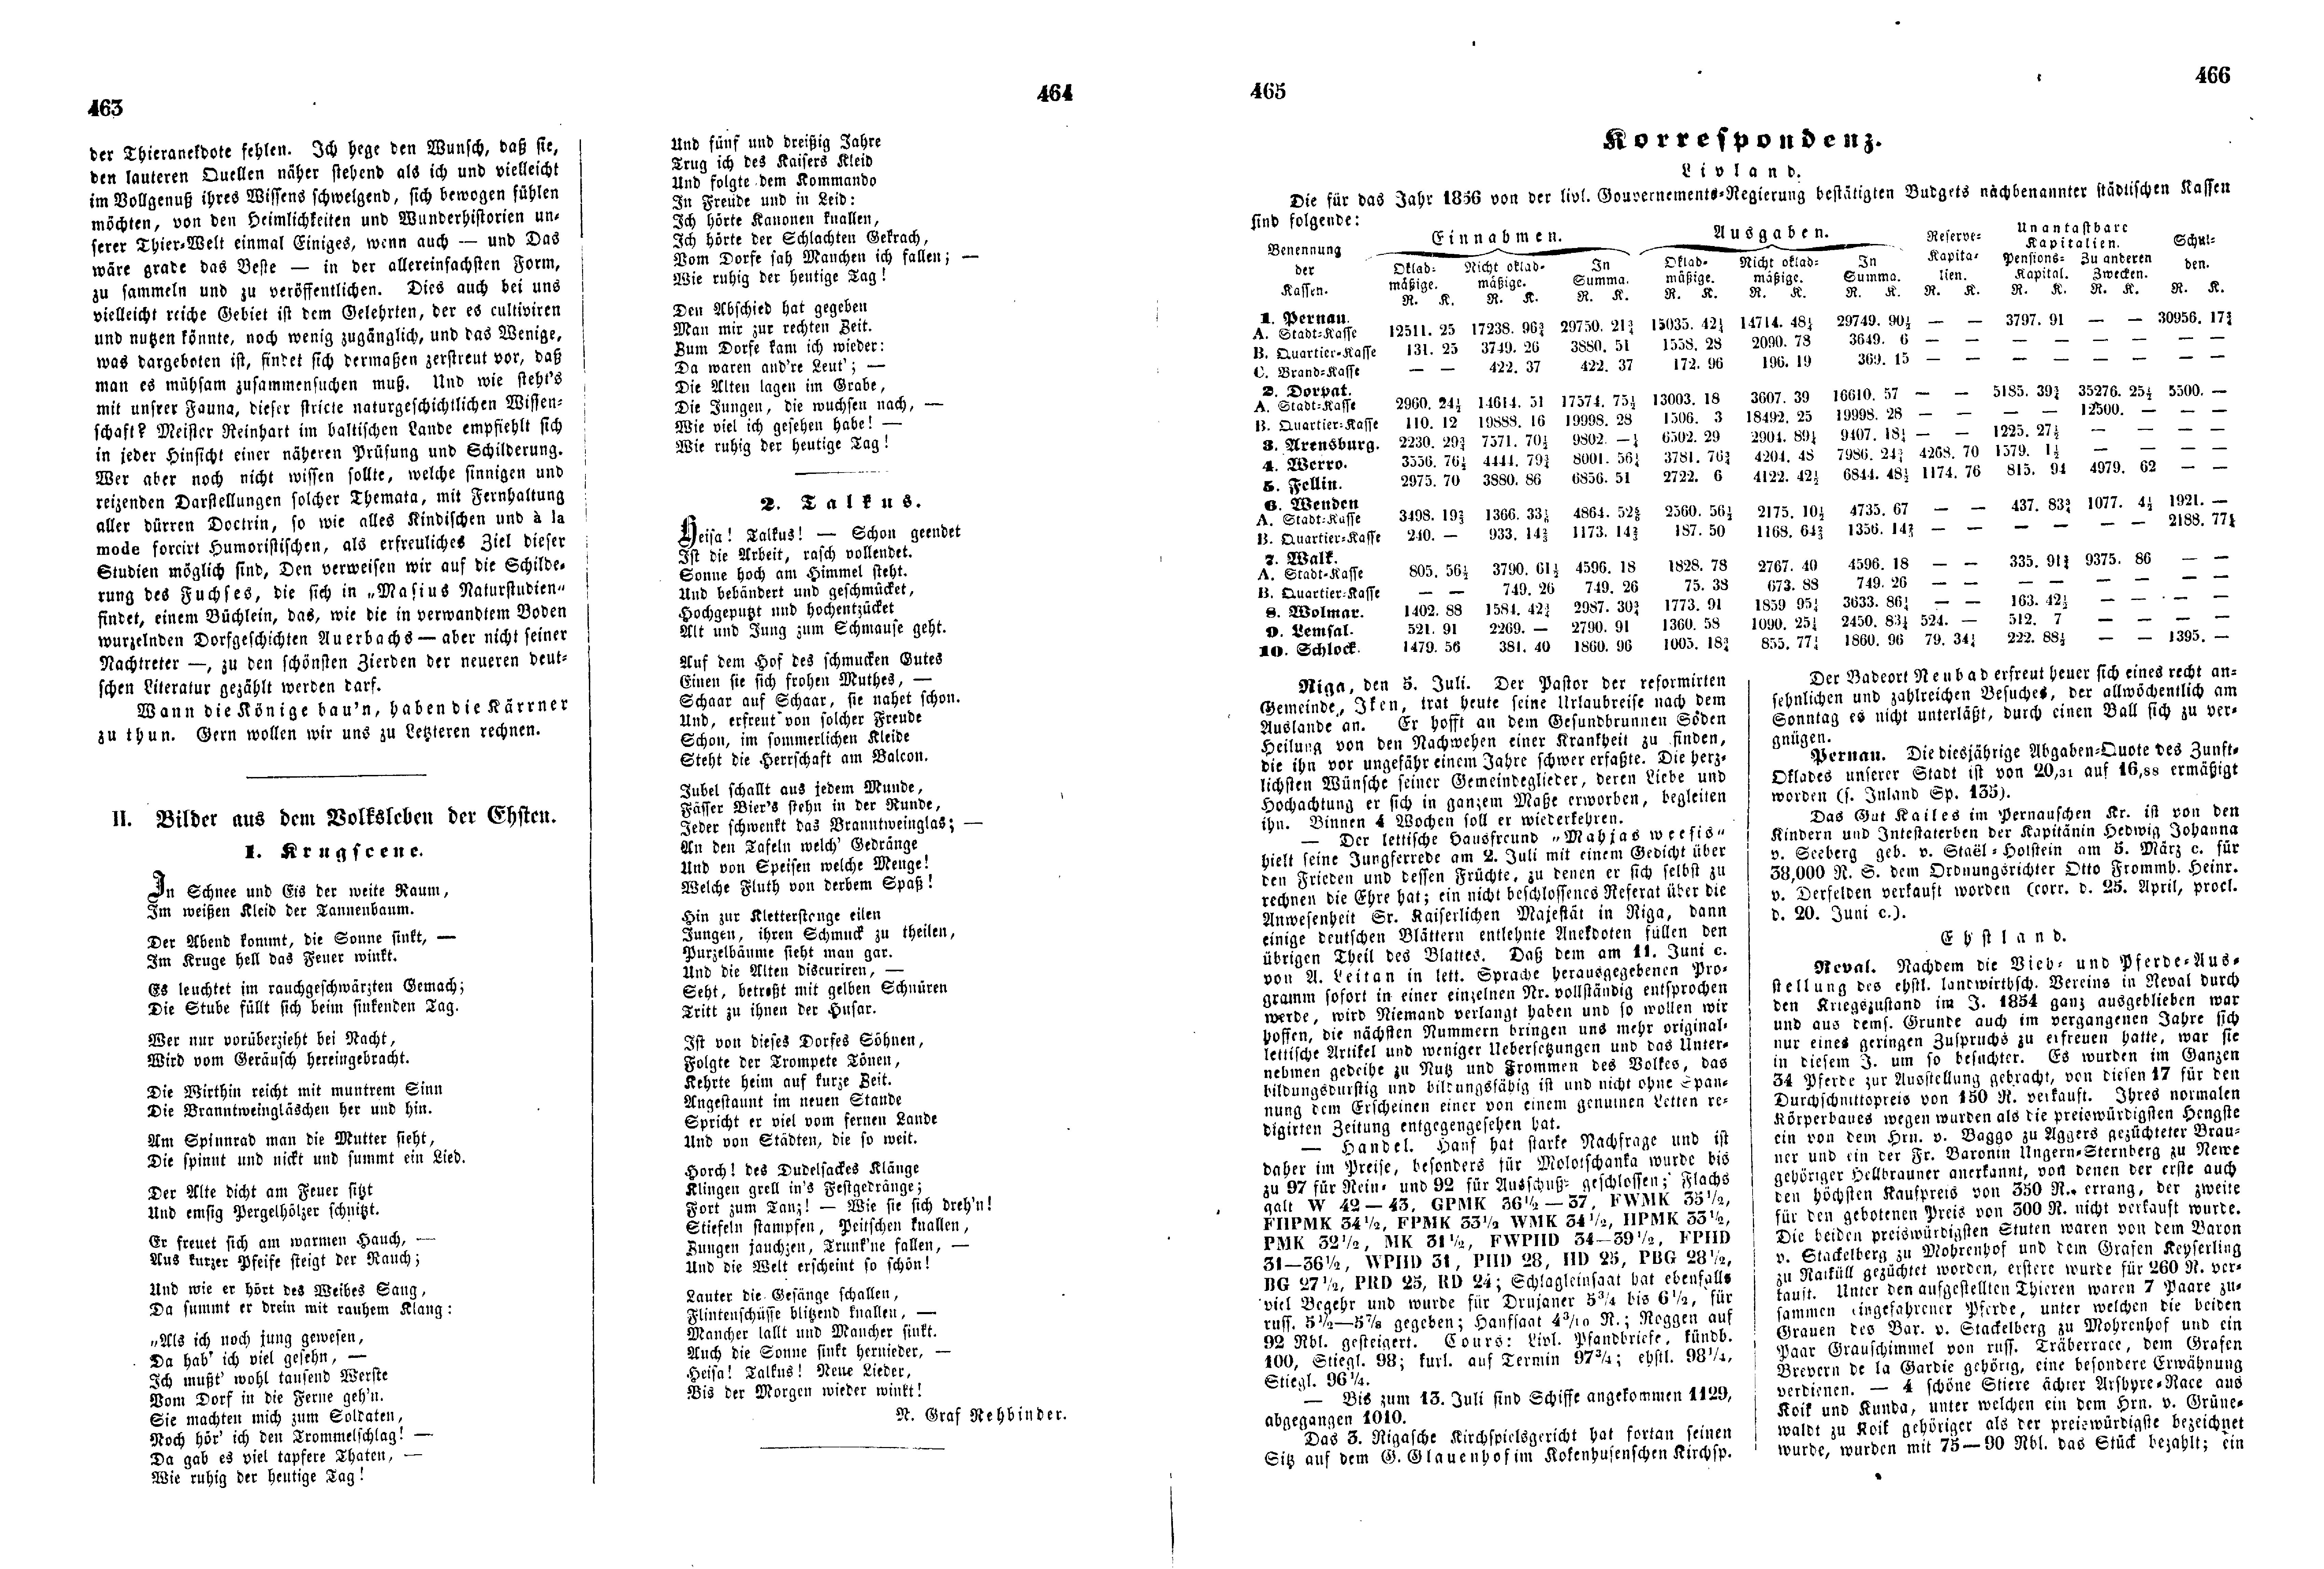 Bilder aus dem Volksleben der Ehsten (1856) | 1. (463-466) Main body of text